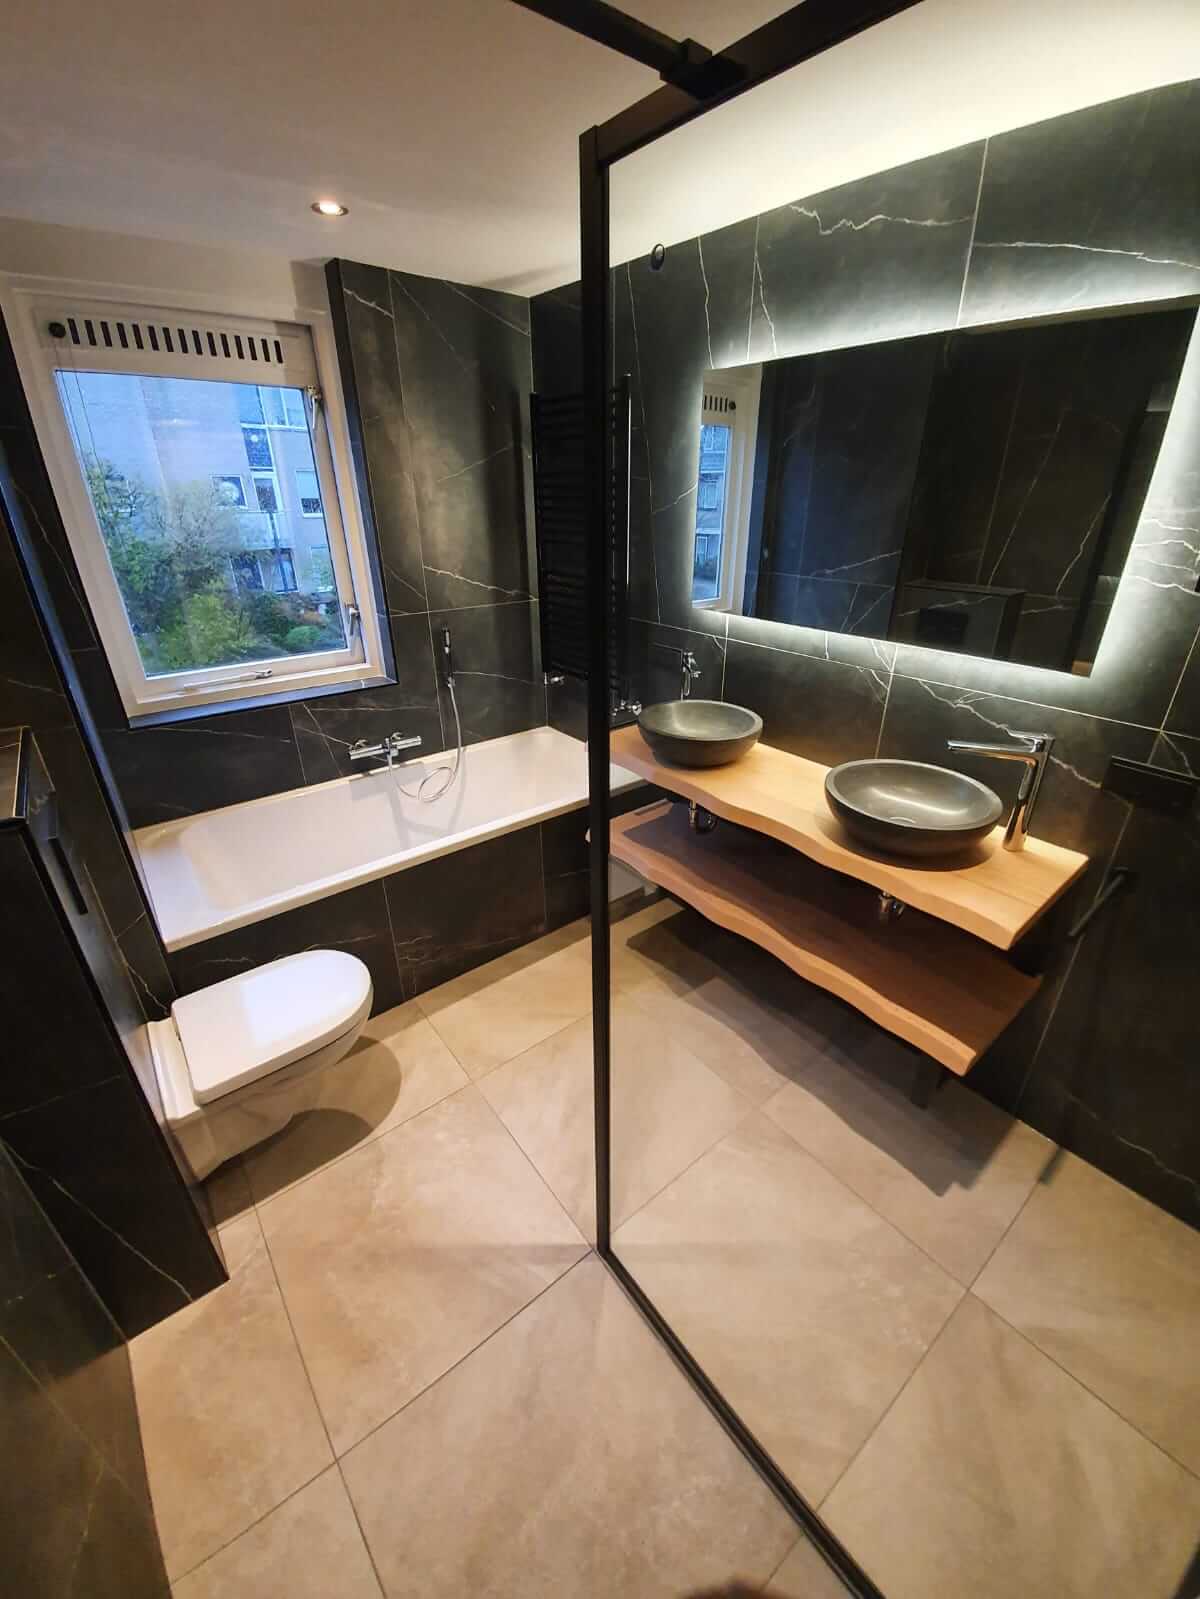 Badkamer renovatie robuuste en moderne stijl